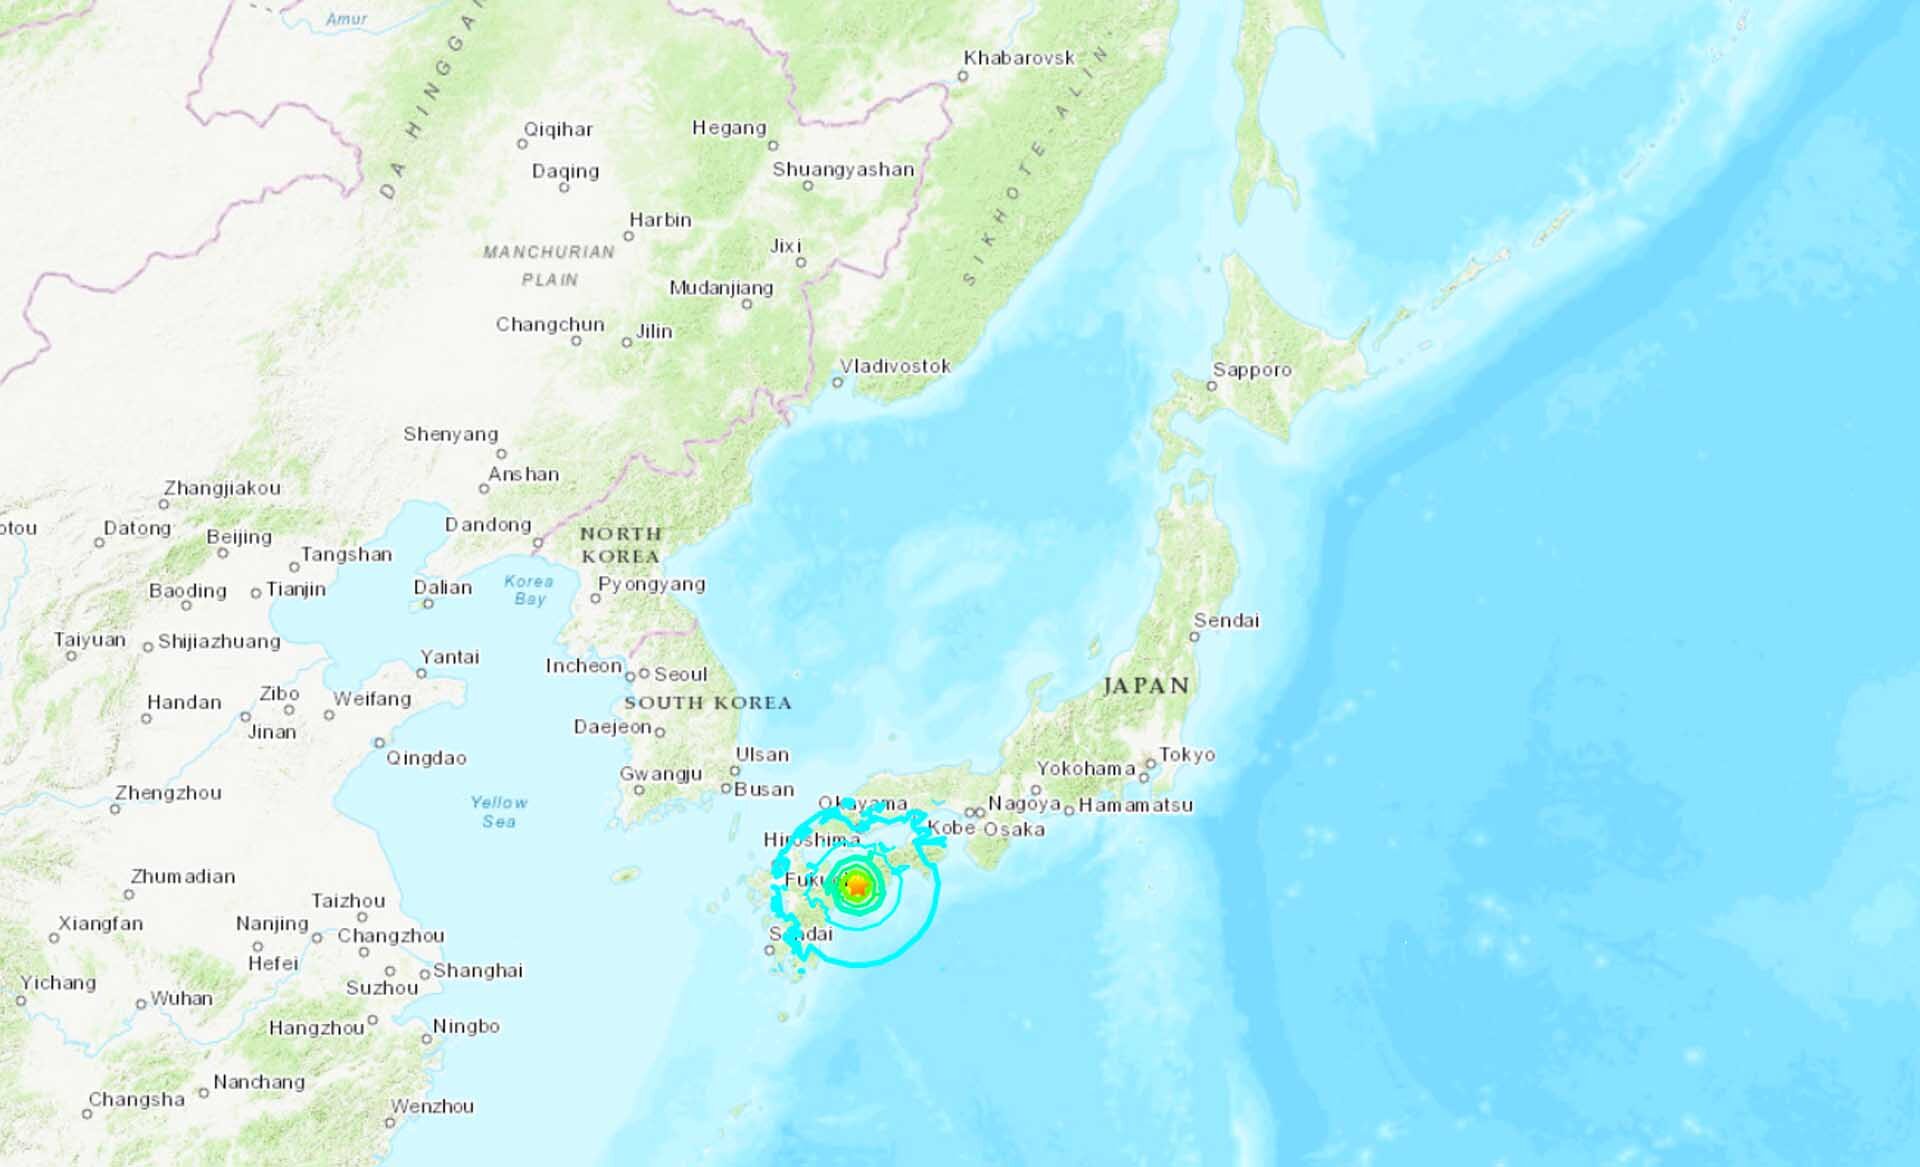 ญี่ปุ่นผวาอีก “แผ่นดินไหว” 6.3 แม็กนิจูดเขย่าเกาะคิวชู-ชิโกกุ บาดเจ็บหลายคน